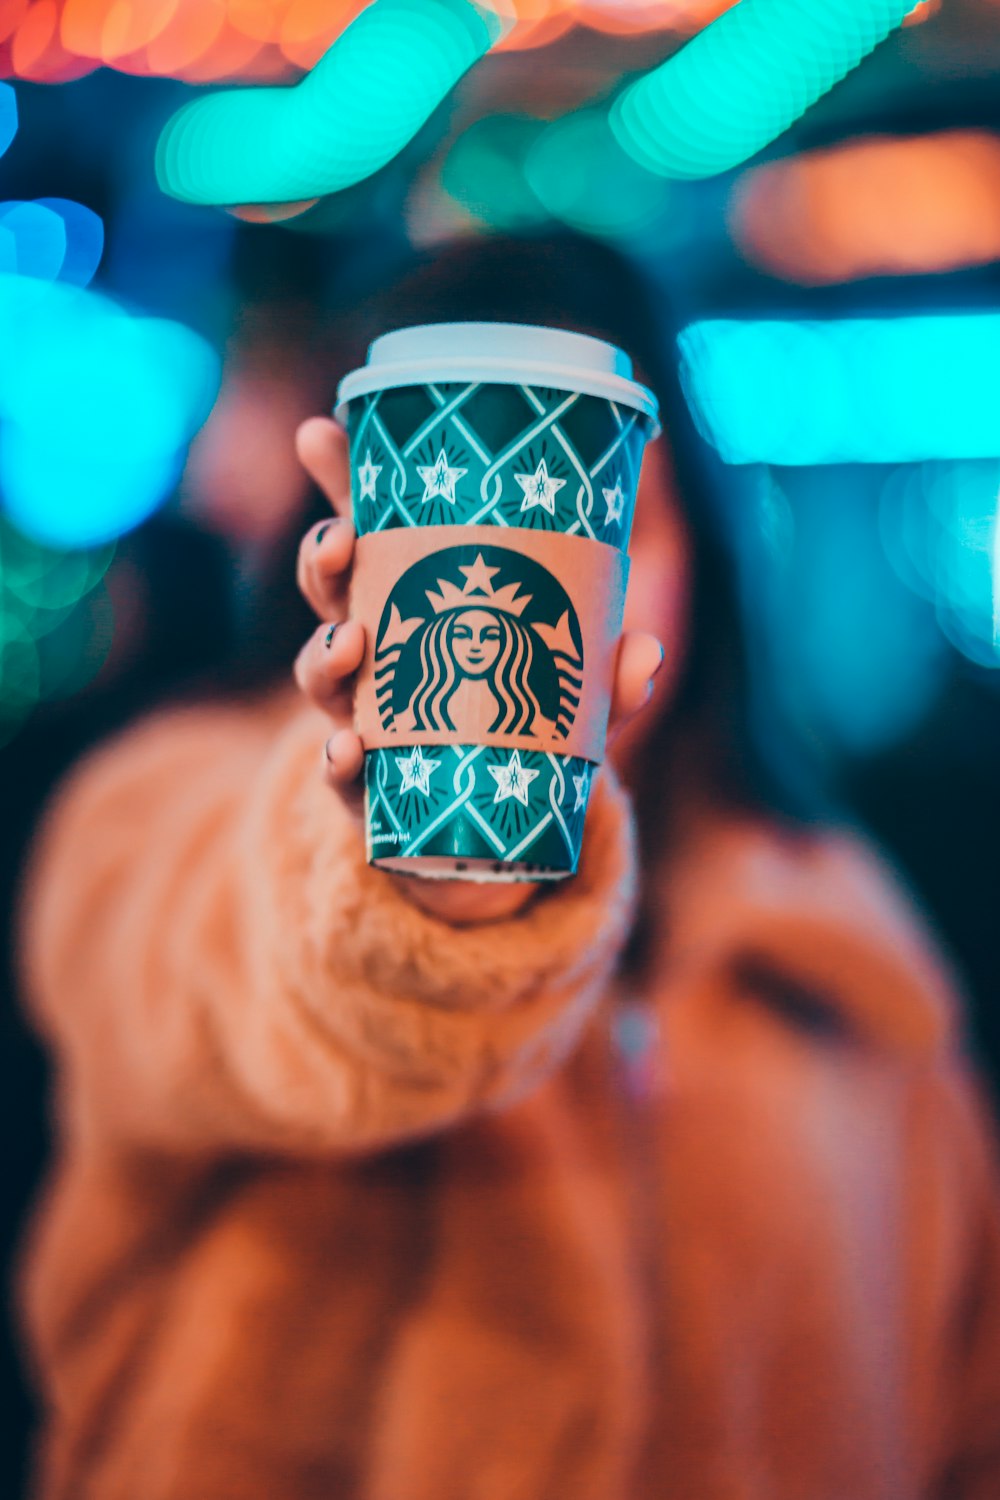 donna sulla giacca marrone che mostra la tazza di caffè Starbucks verde e marrone